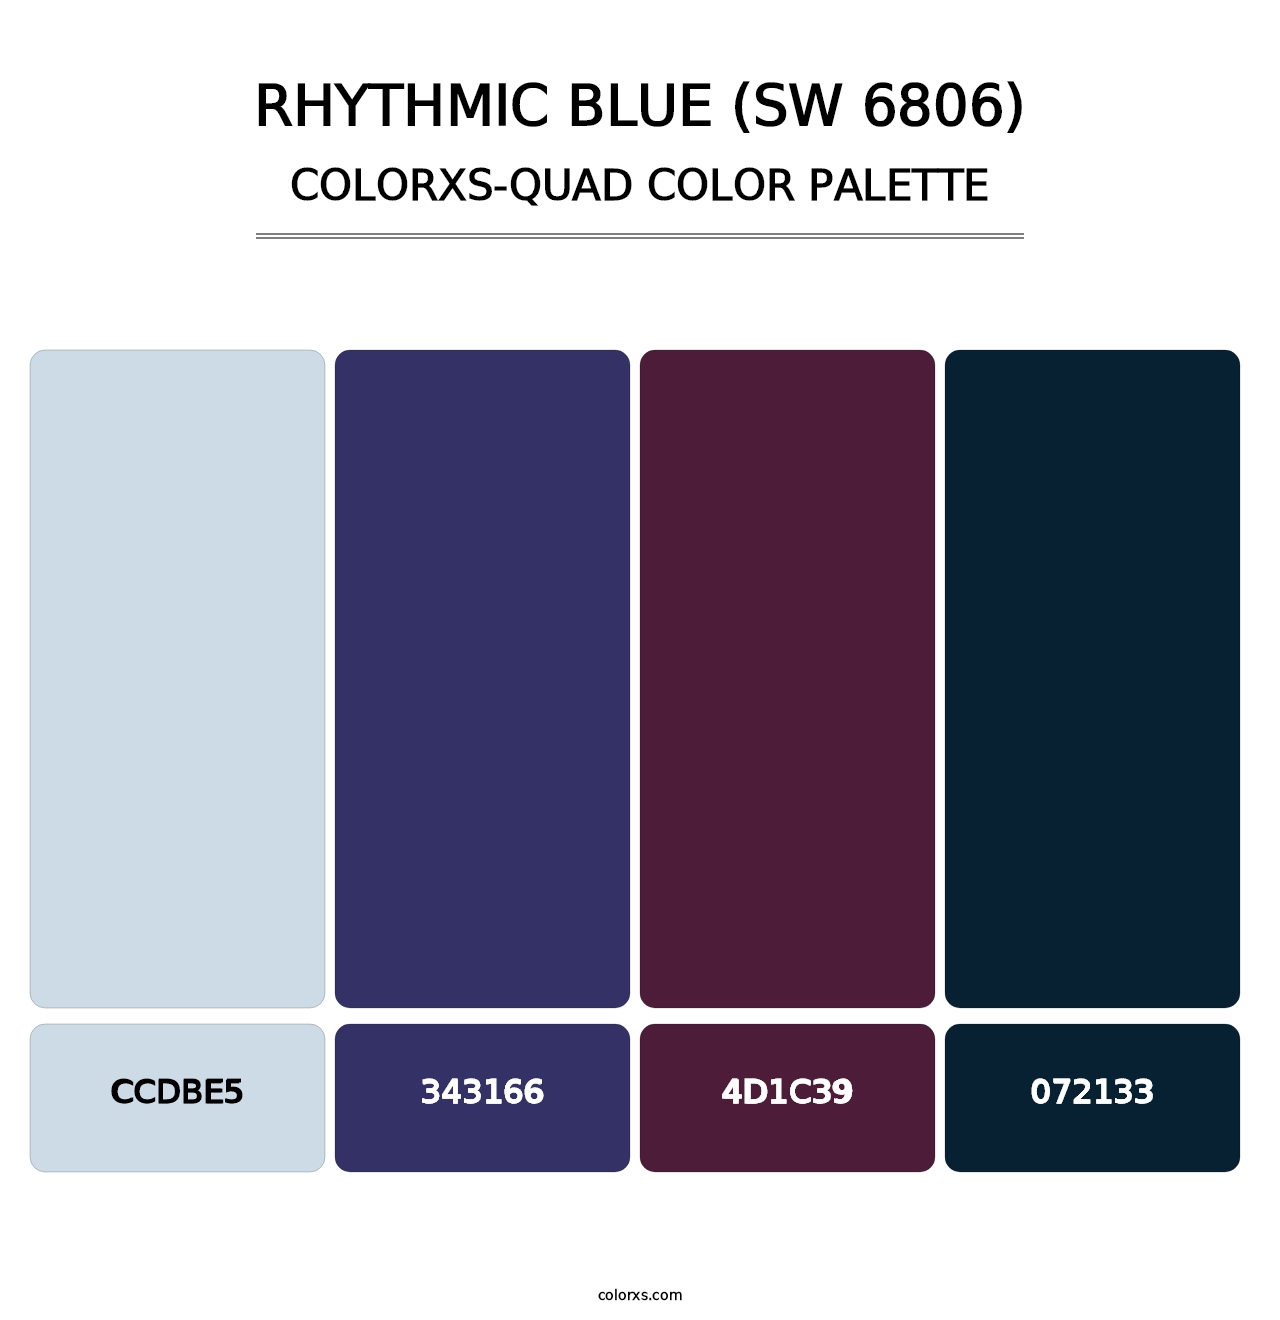 Rhythmic Blue (SW 6806) - Colorxs Quad Palette